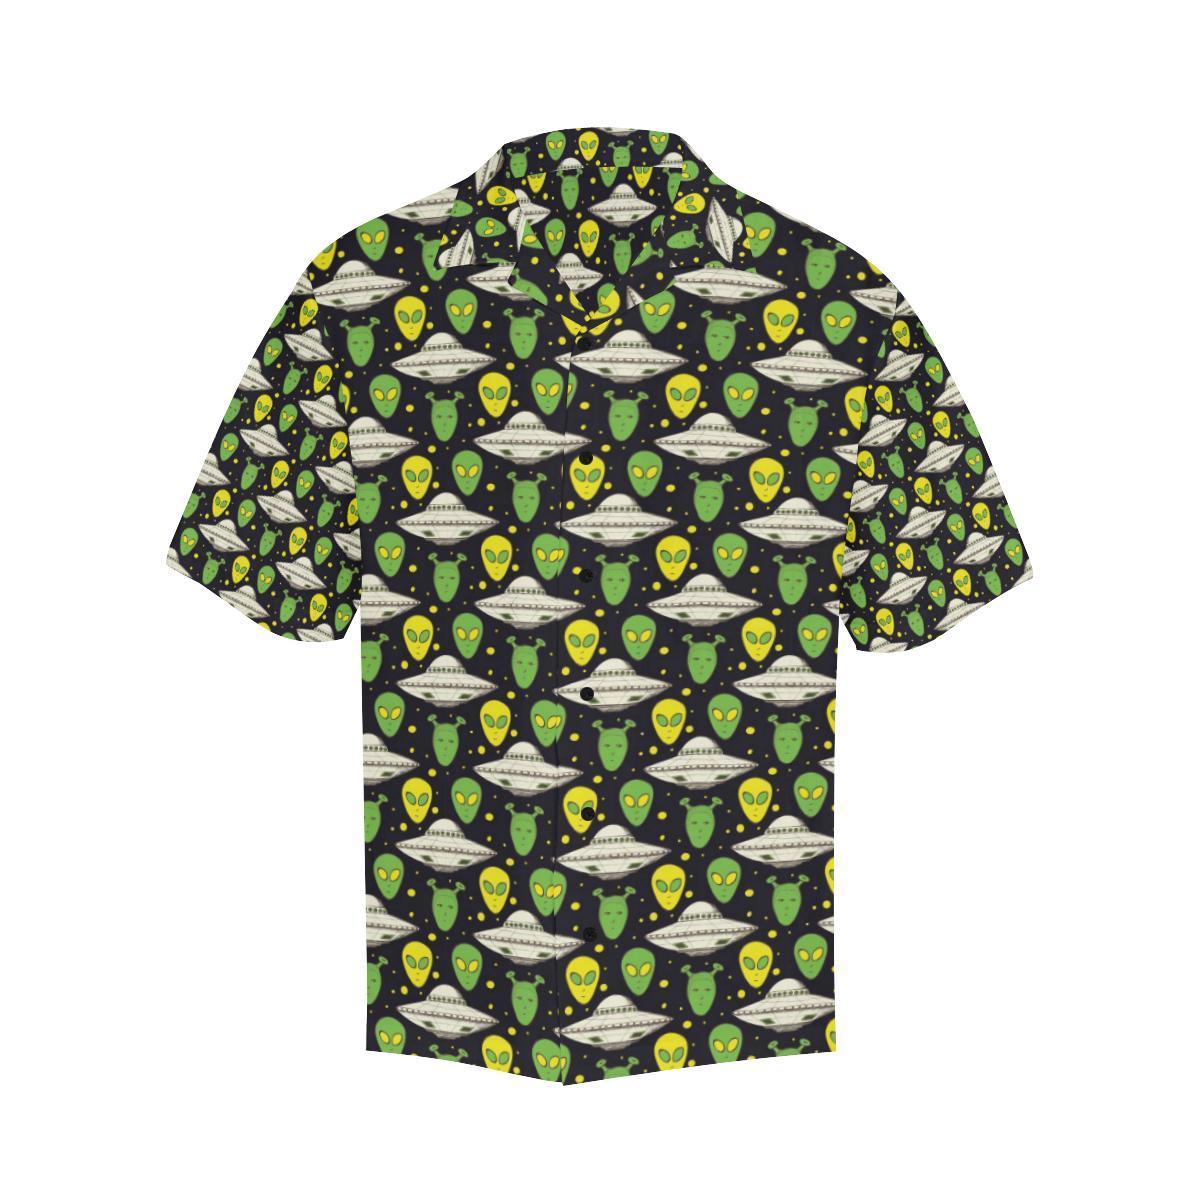 Unifinz UFO Hawaiian Shirt Green Yellow Aliens White UFO Pattern Hawaii Aloha Shirt 2022